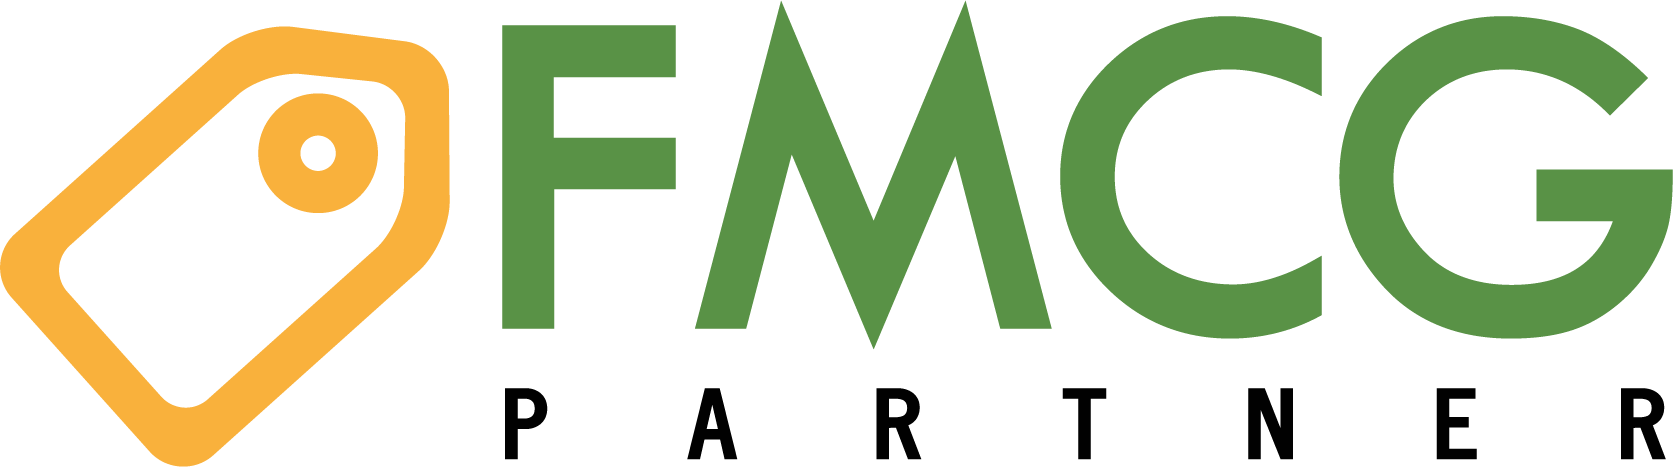 FMCG logo FMCG logo color FMCG logo color kopia 3